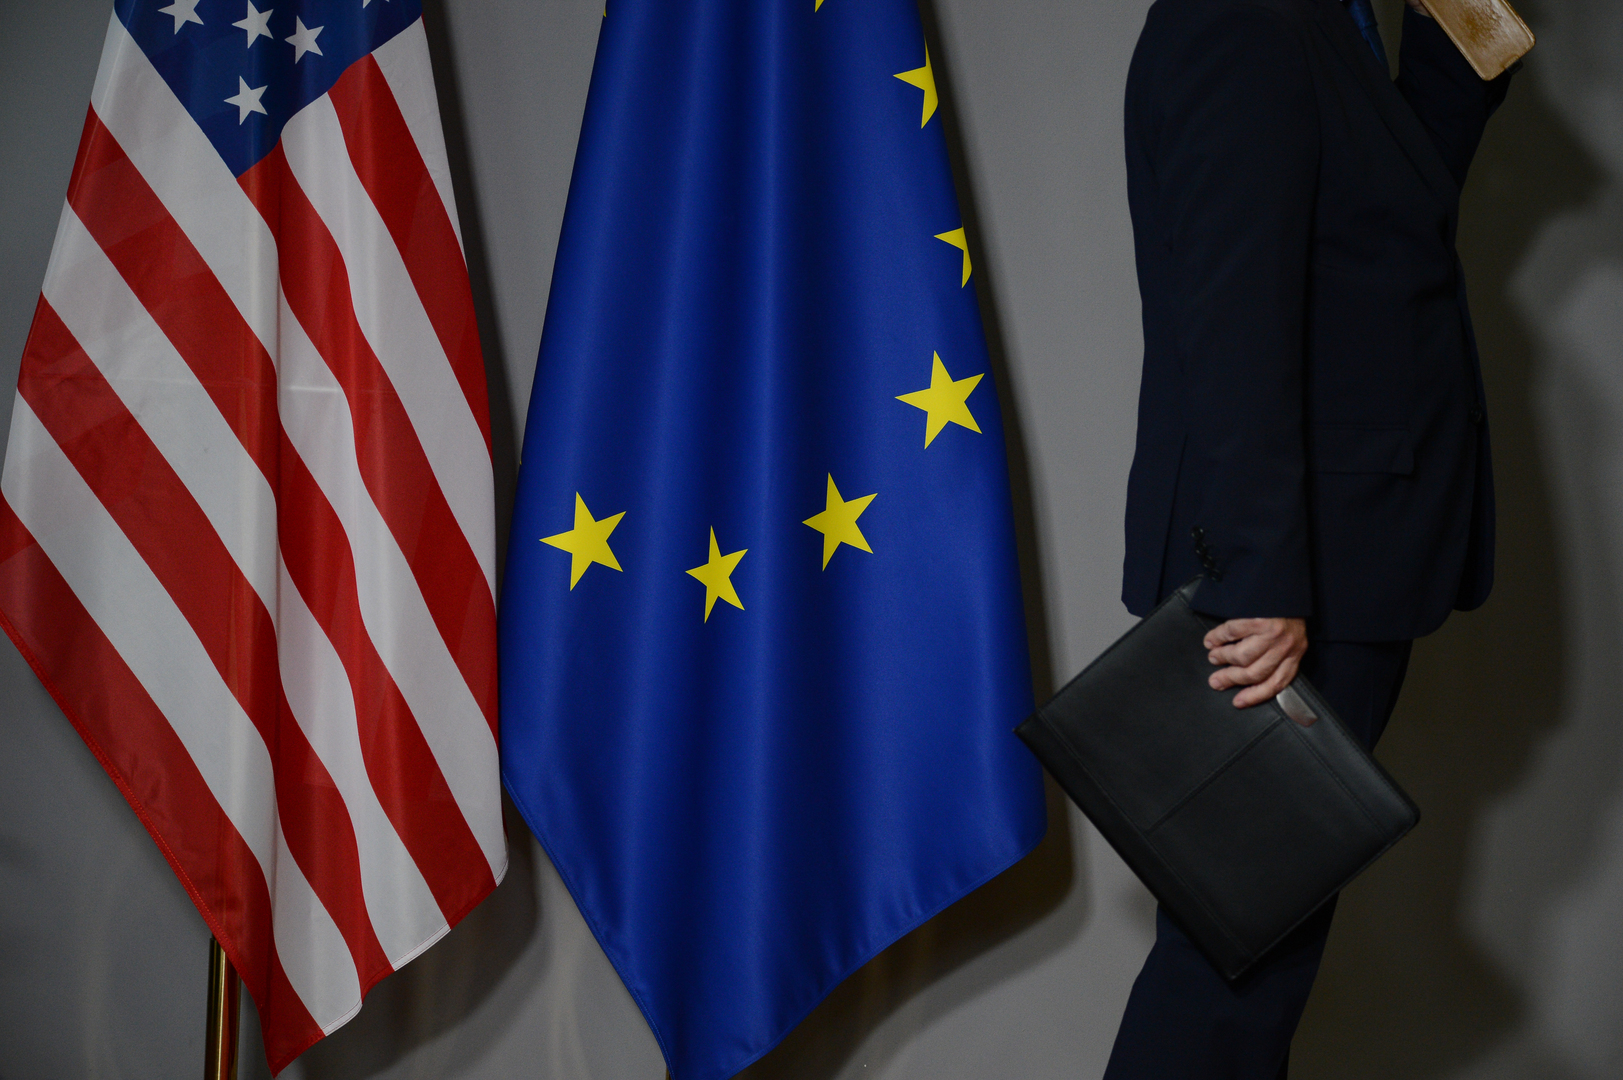 استطلاع: الأوروبيون يعتبرون أن التعاون مع واشنطن ليس ضروريا إلا للأغراض الاستراتيجية